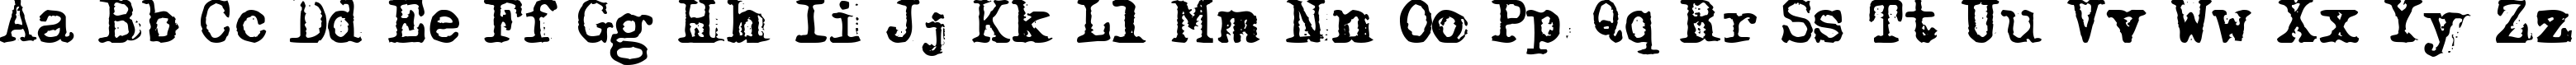 Пример написания английского алфавита шрифтом Adler